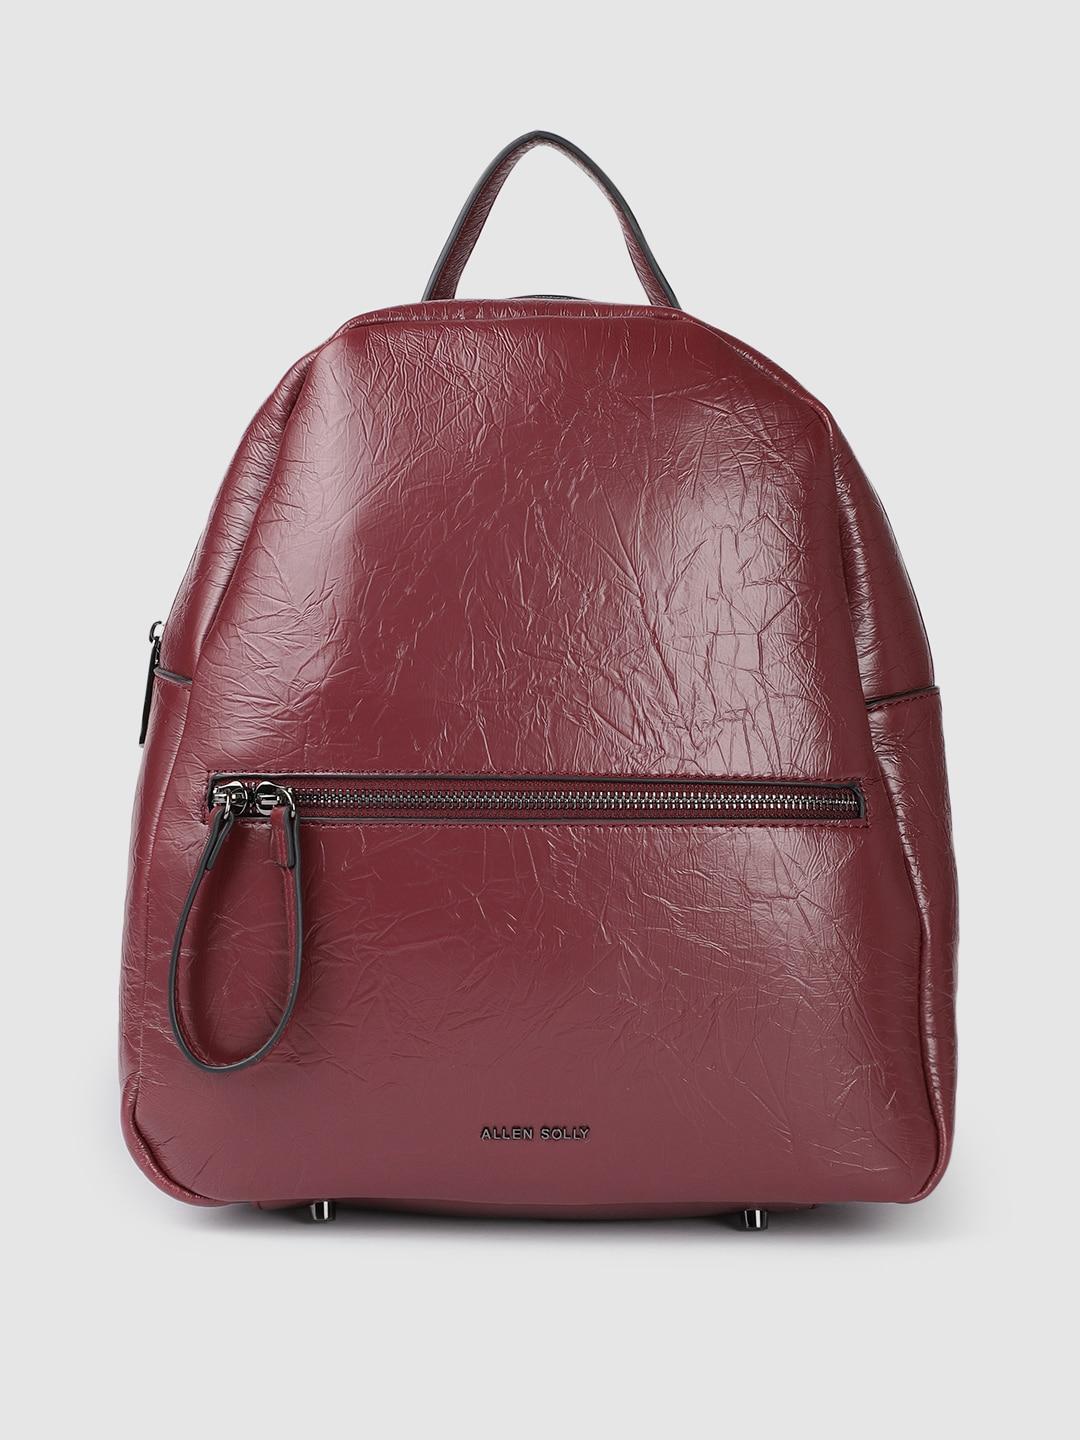 allen solly women burgundy textured backpack